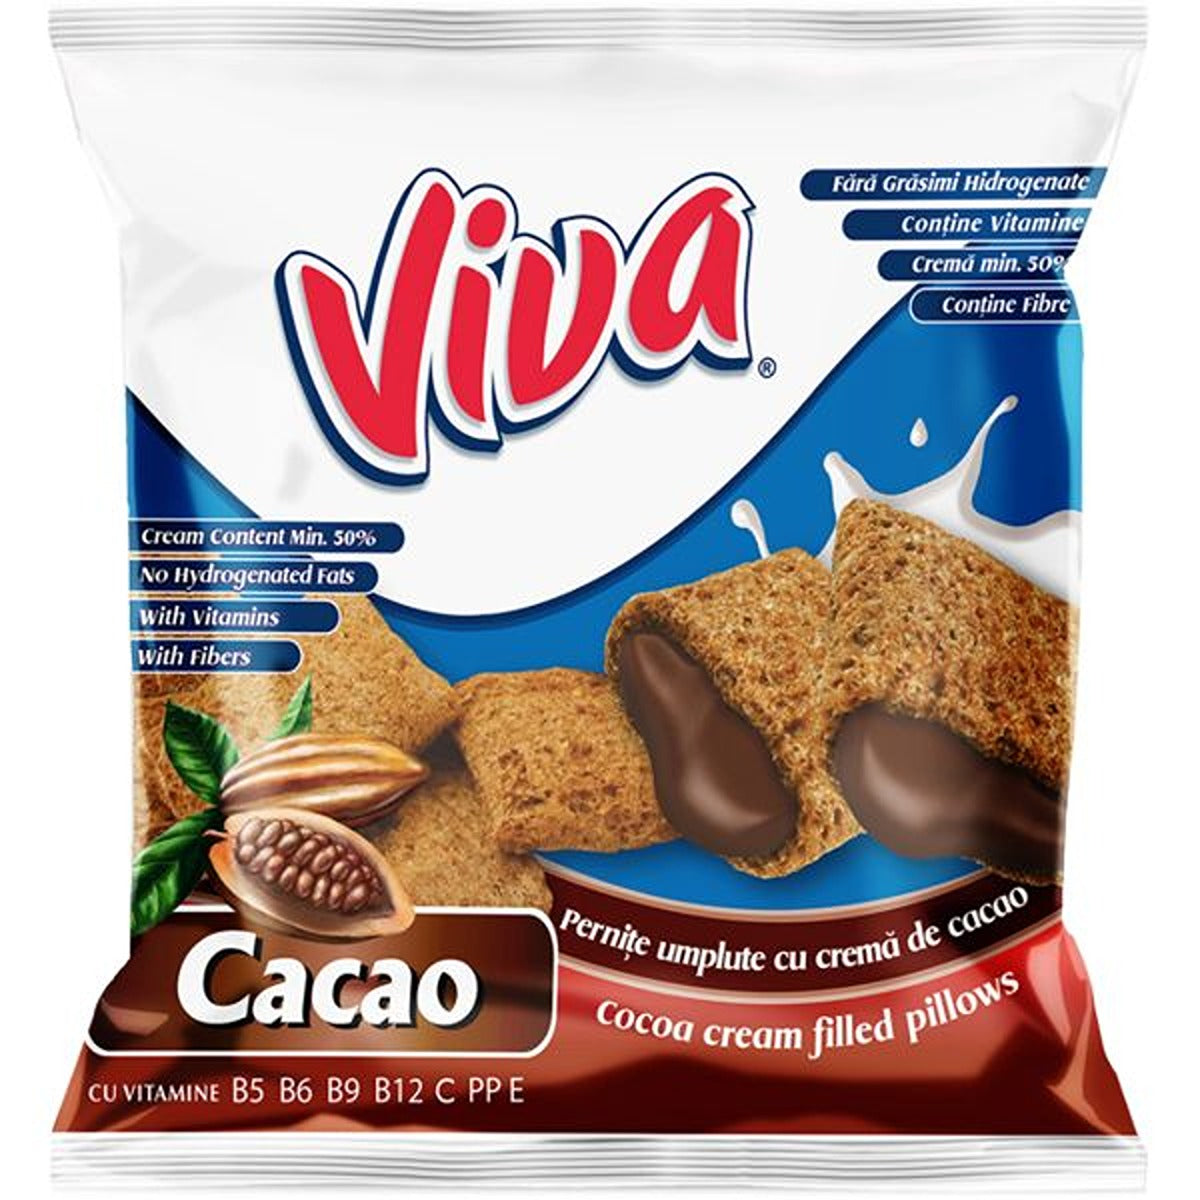 Viva cocoa cream snack chocolate puffs.